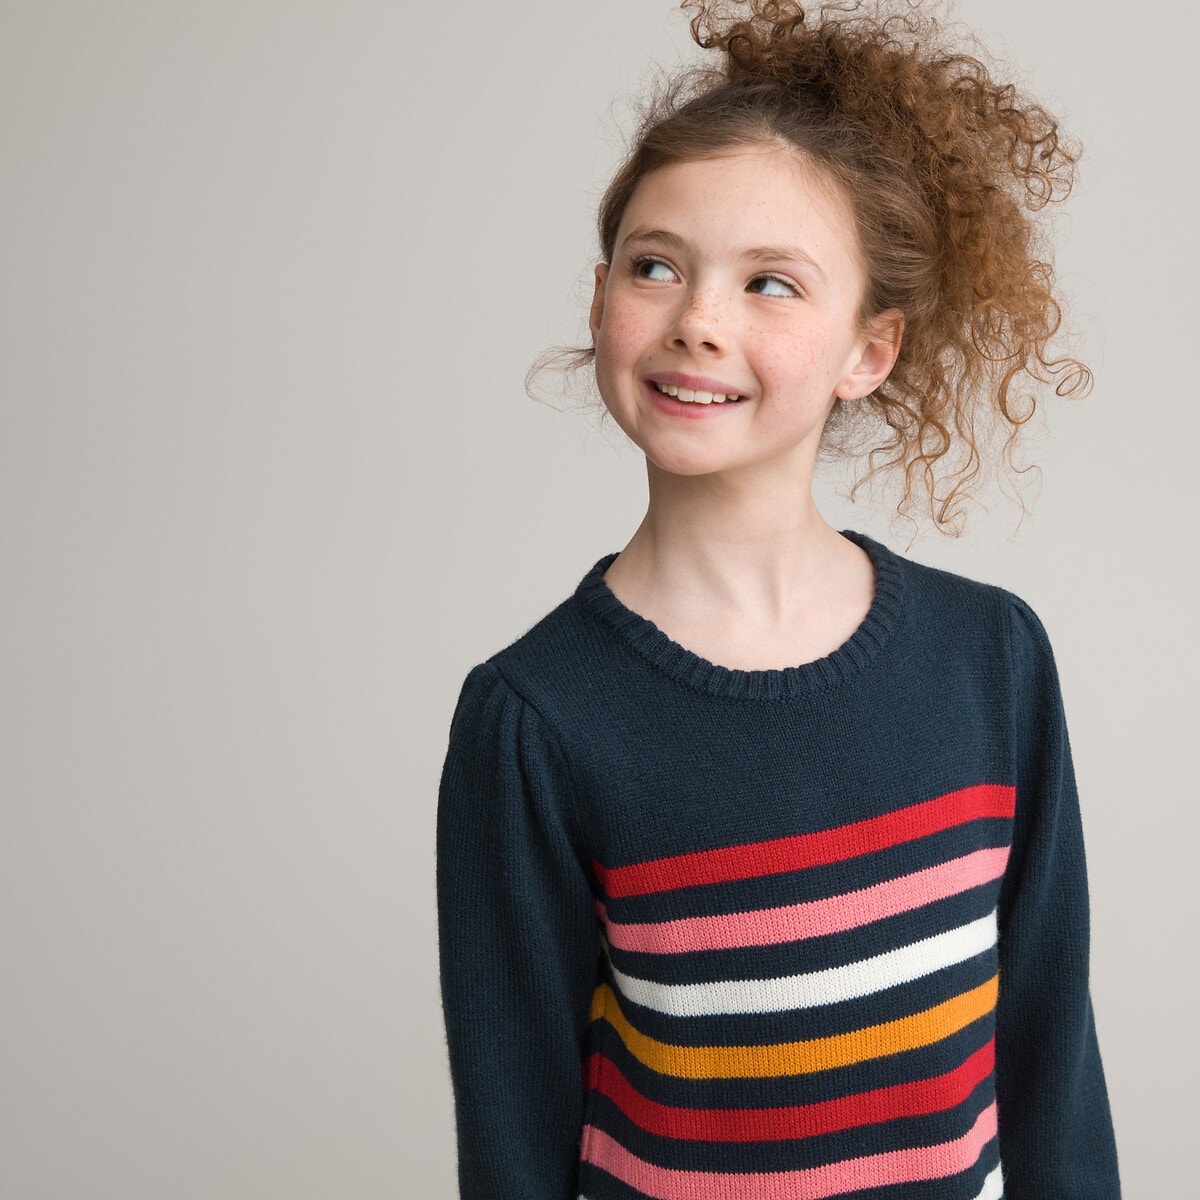 Ριγέ φόρεμα φούτερ πουλόβερ, 3-12 χρονών